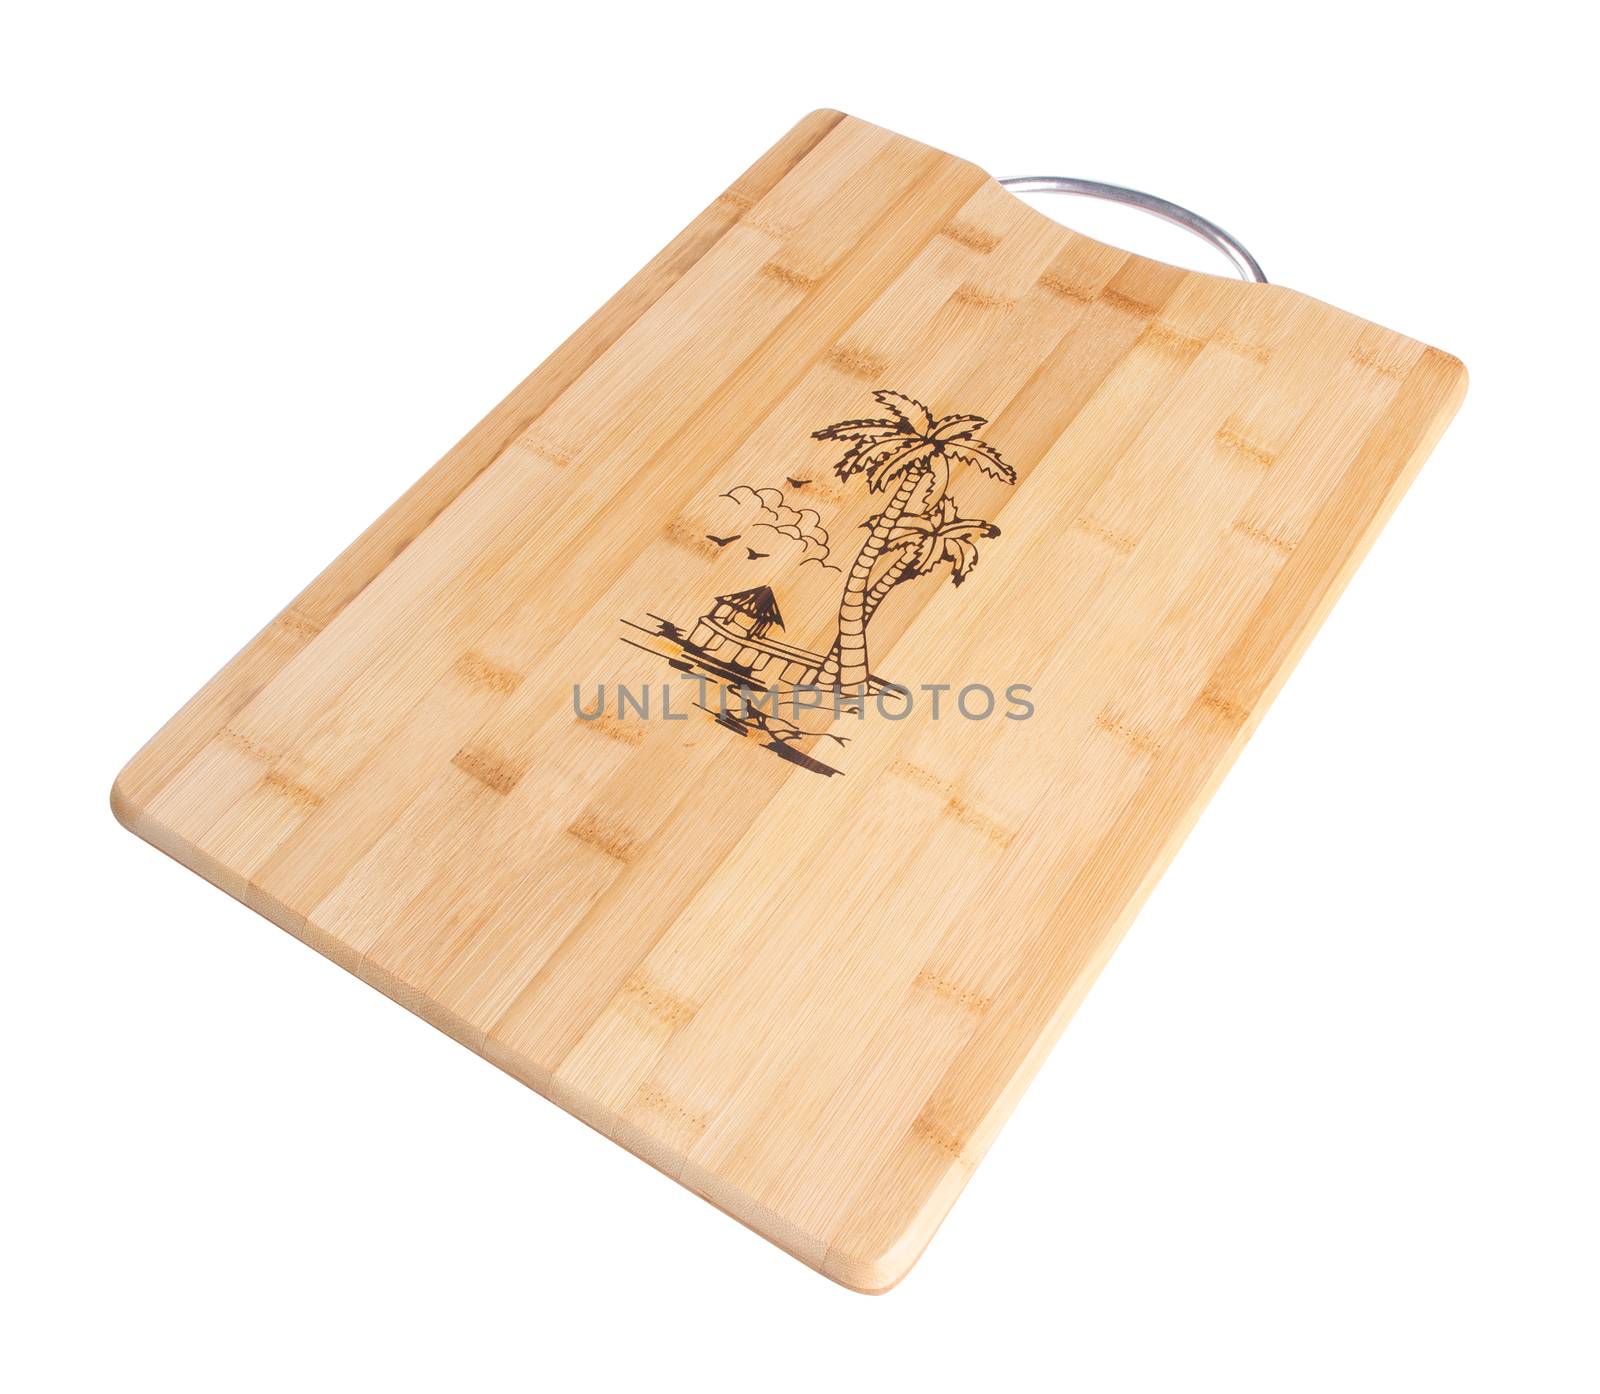 wood cutting board. wood cutting board on a background. by heinteh